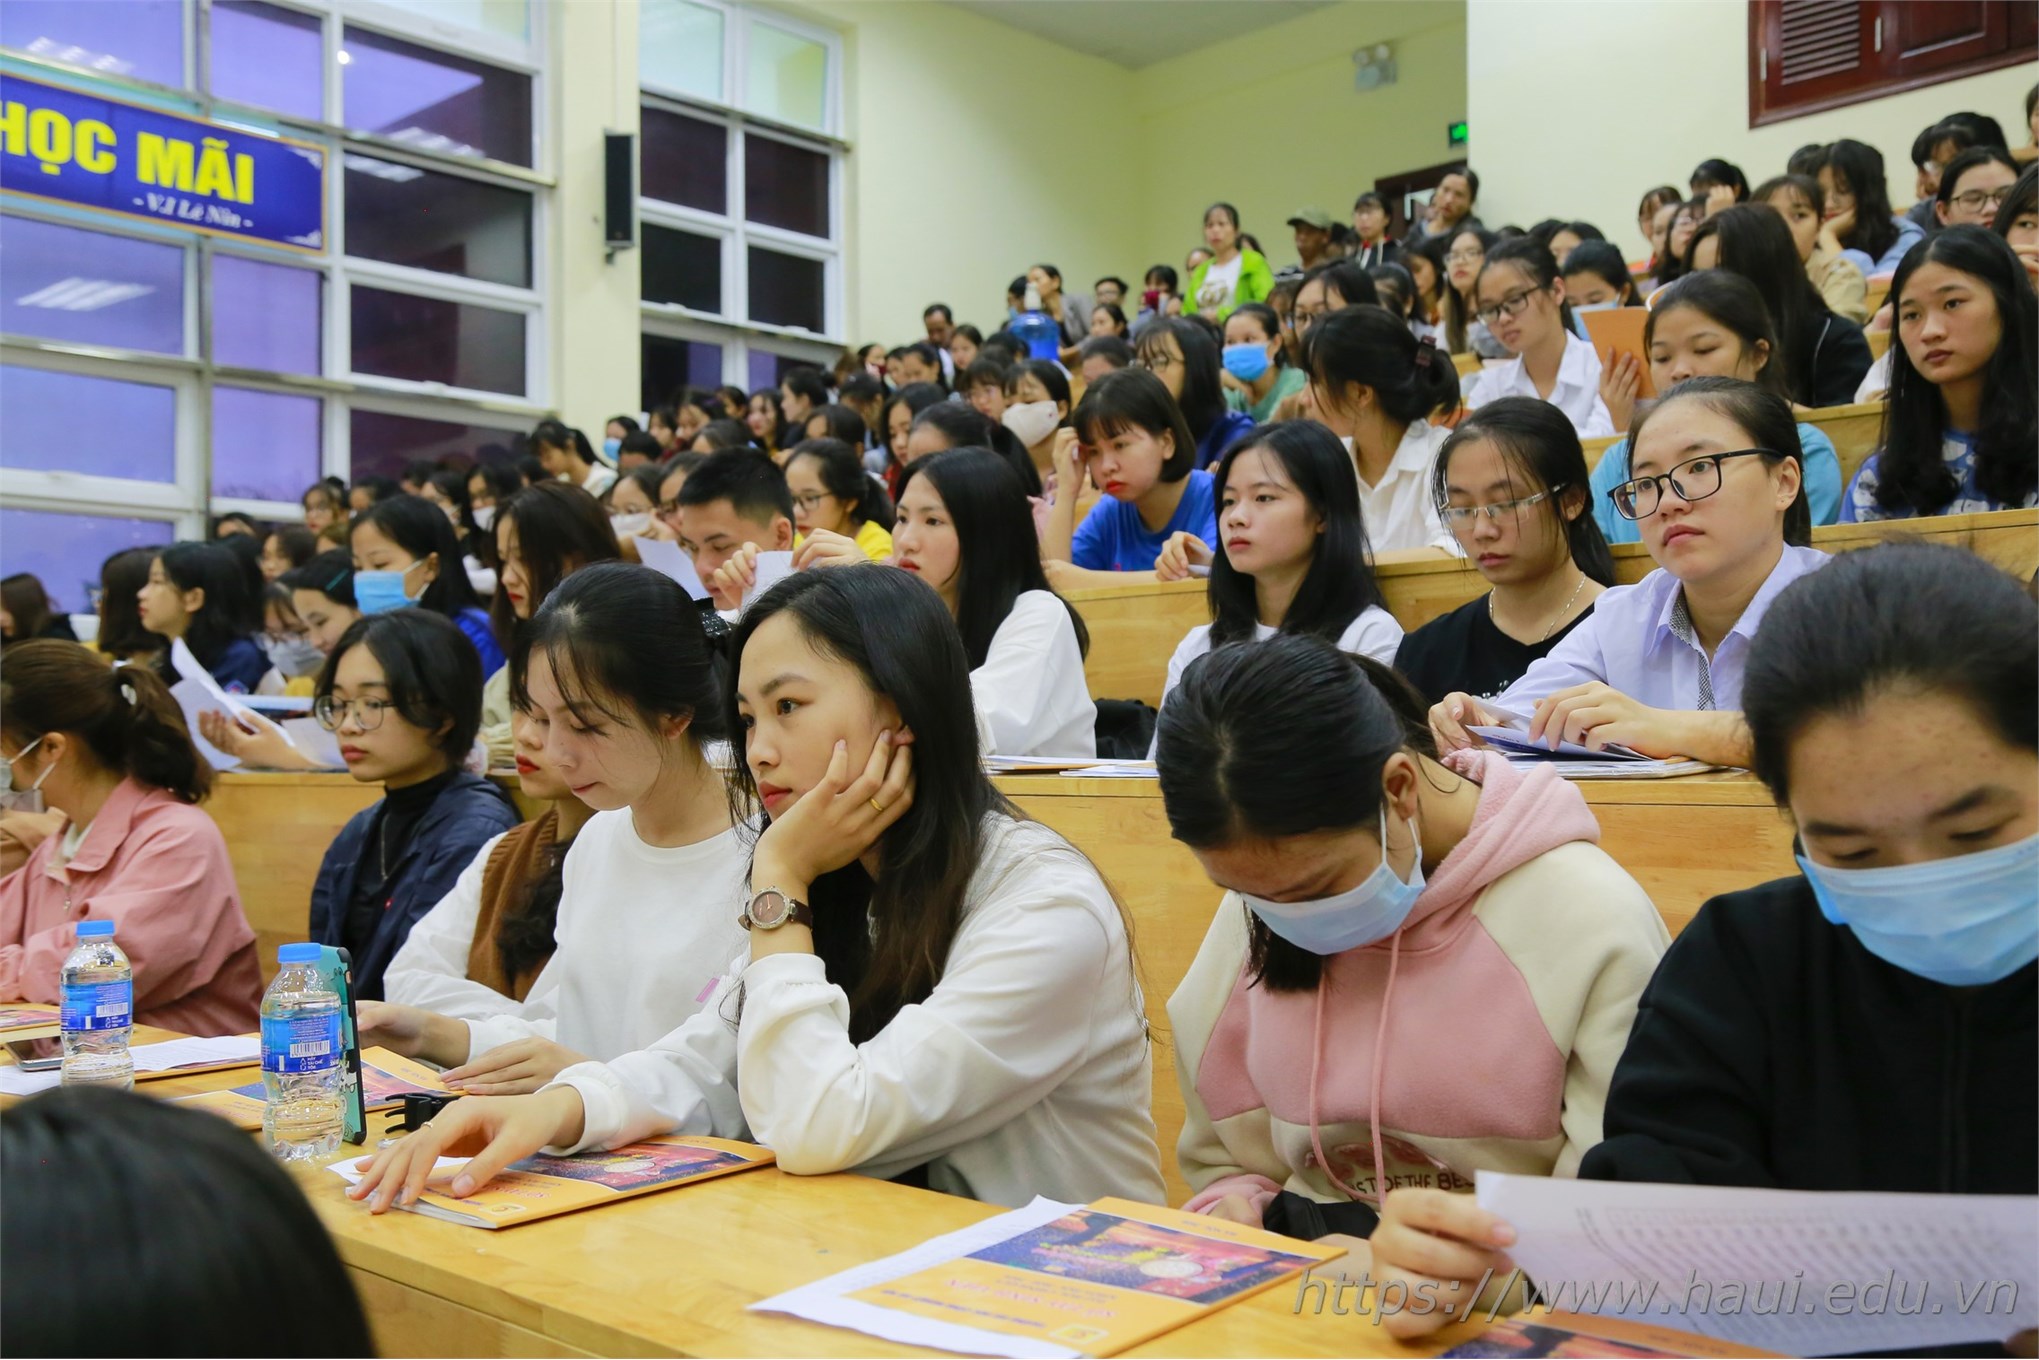 7.000 tân sinh viên ra nhập ngôi nhà chung Đại học Công nghiệp Hà Nội